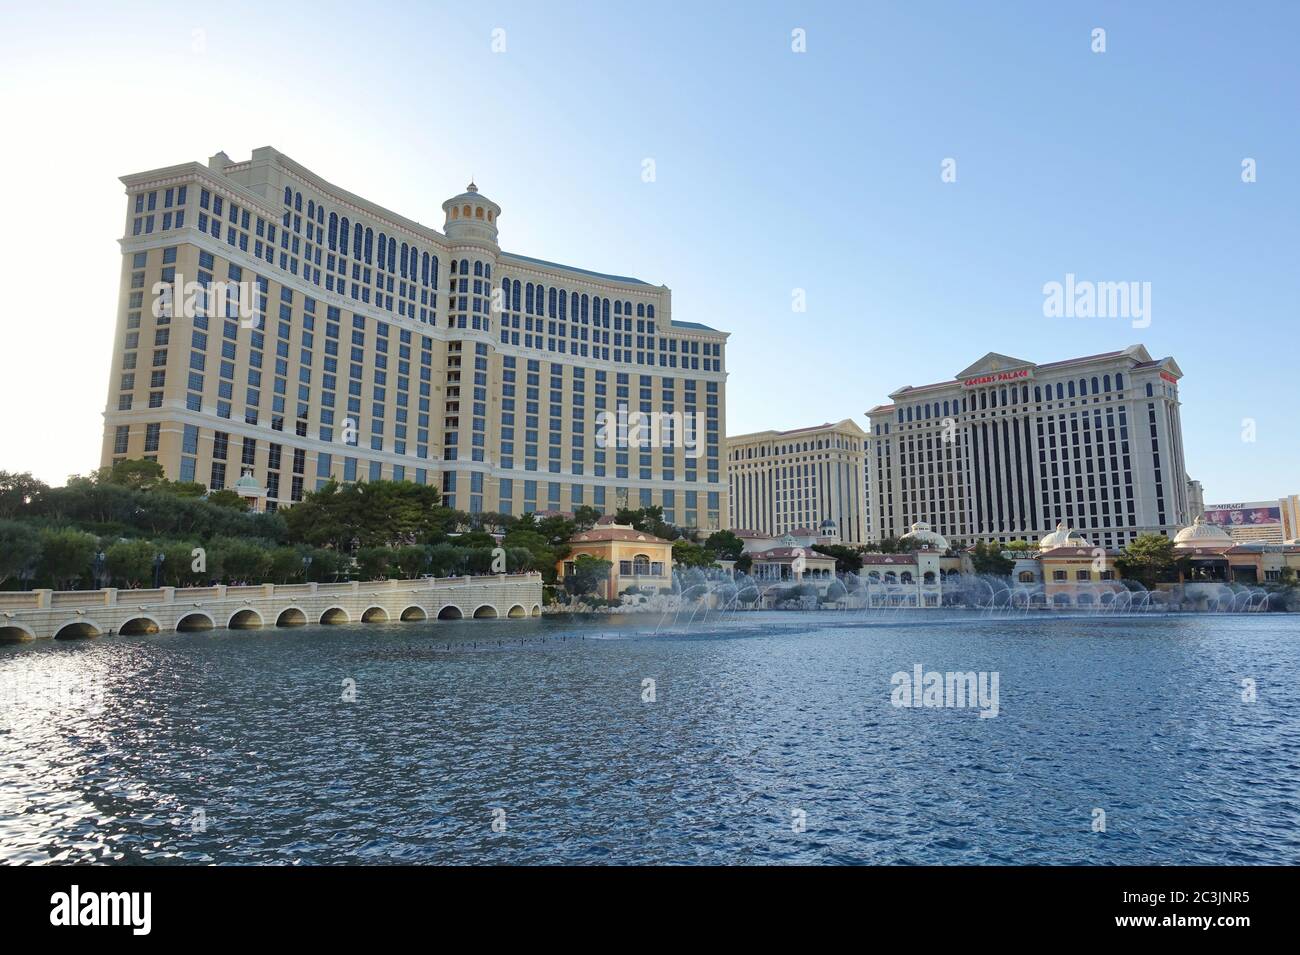 LAS VEGAS, NV – 6. JUNI 2020 – Außenansicht des Bellagio, einem Luxushotel und Kasino am Strip in der Innenstadt von Las Vegas, USA. Stockfoto